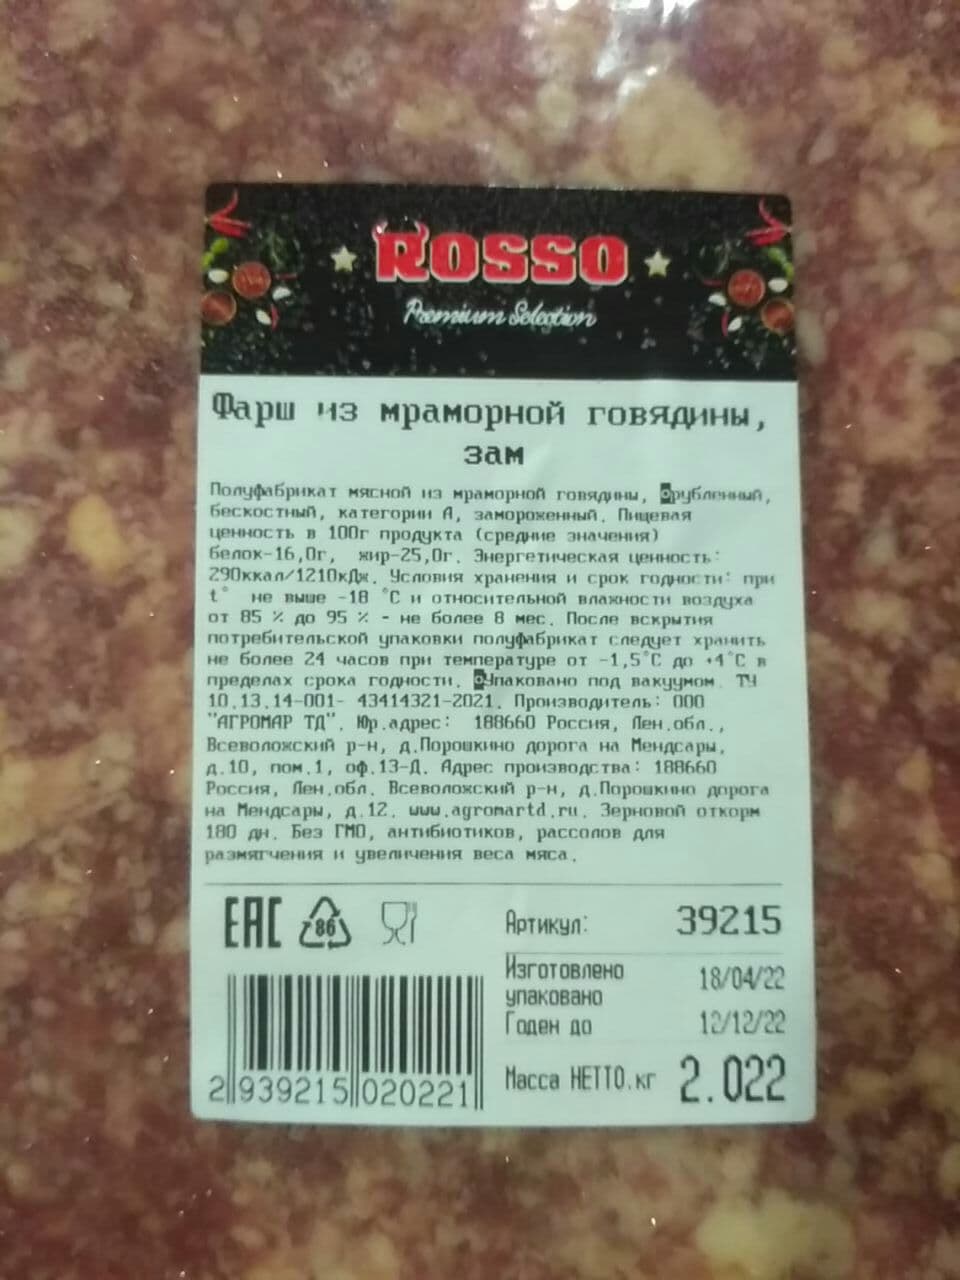 Говядина фарш из мраморной говядины 70/30 в/у ~2 кг с/м, Rosso, Россия